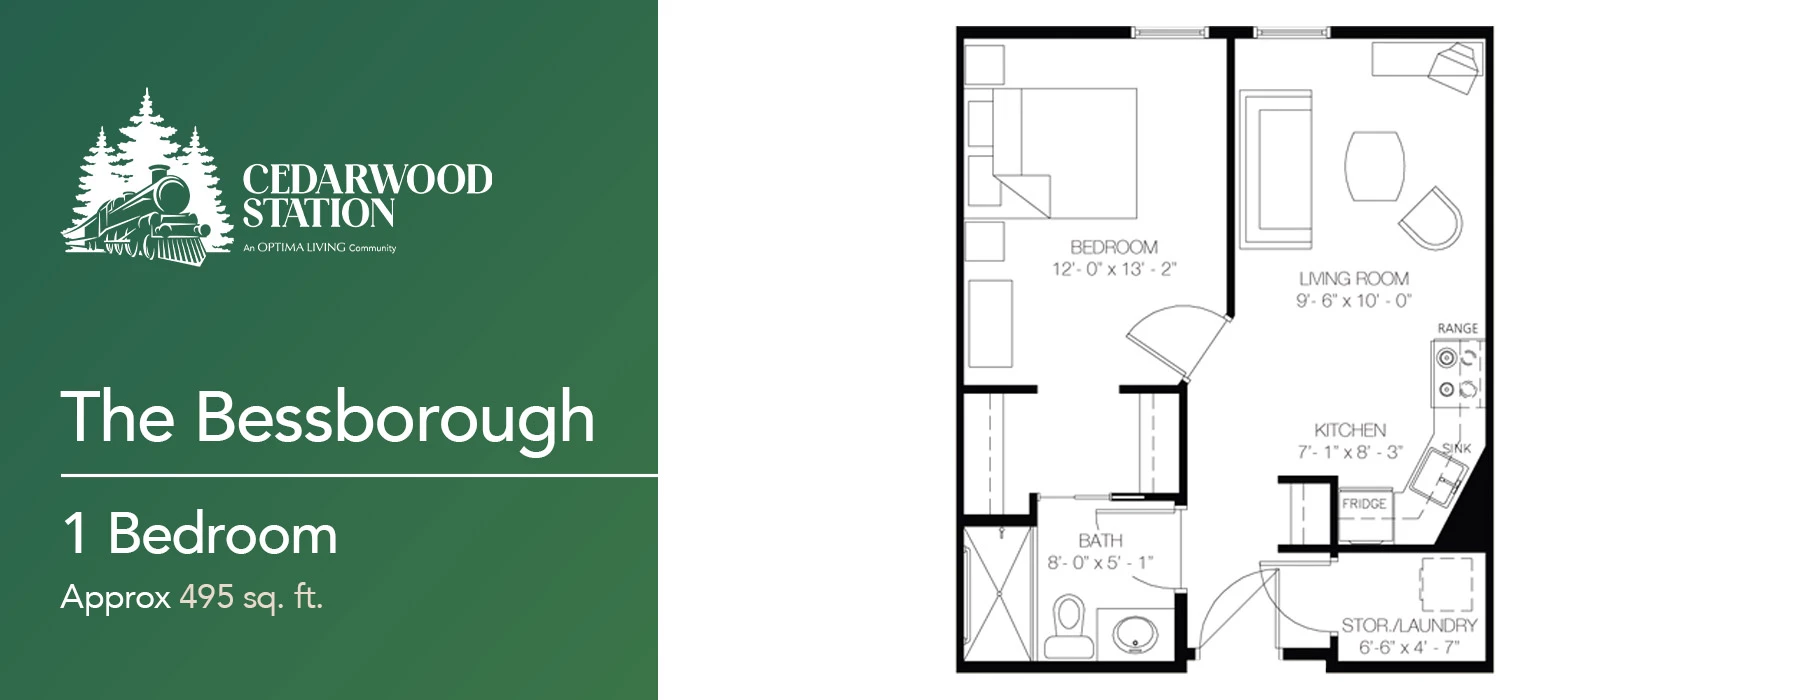 The Bessborough 1 bedroom floor plan